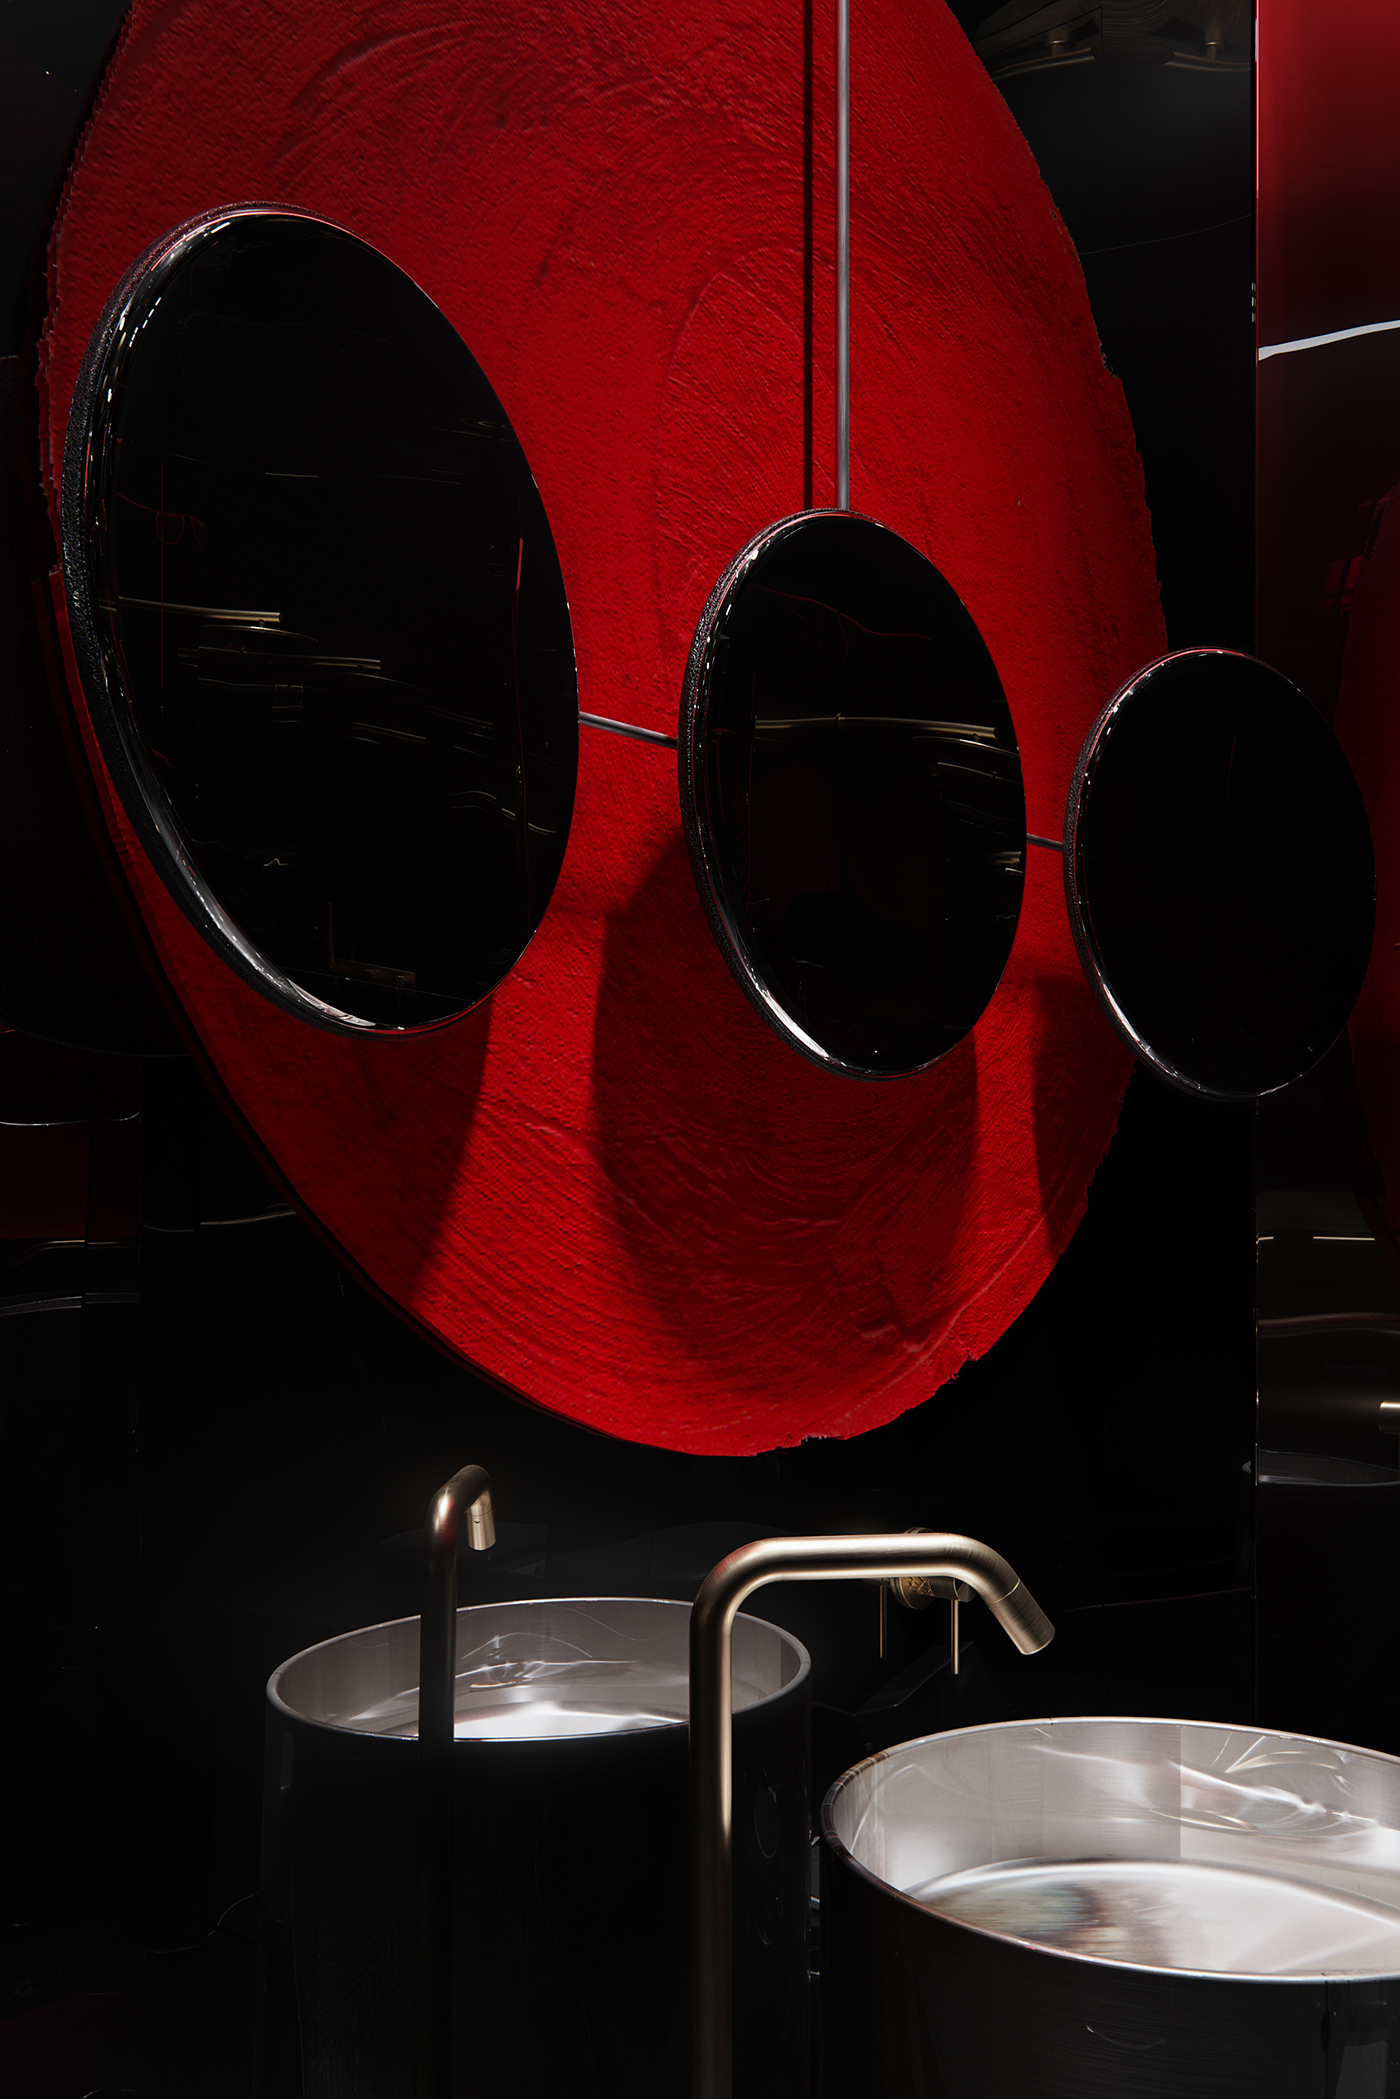 3ds max architecture bathroom CGI corona render  Interior interior design  visualization